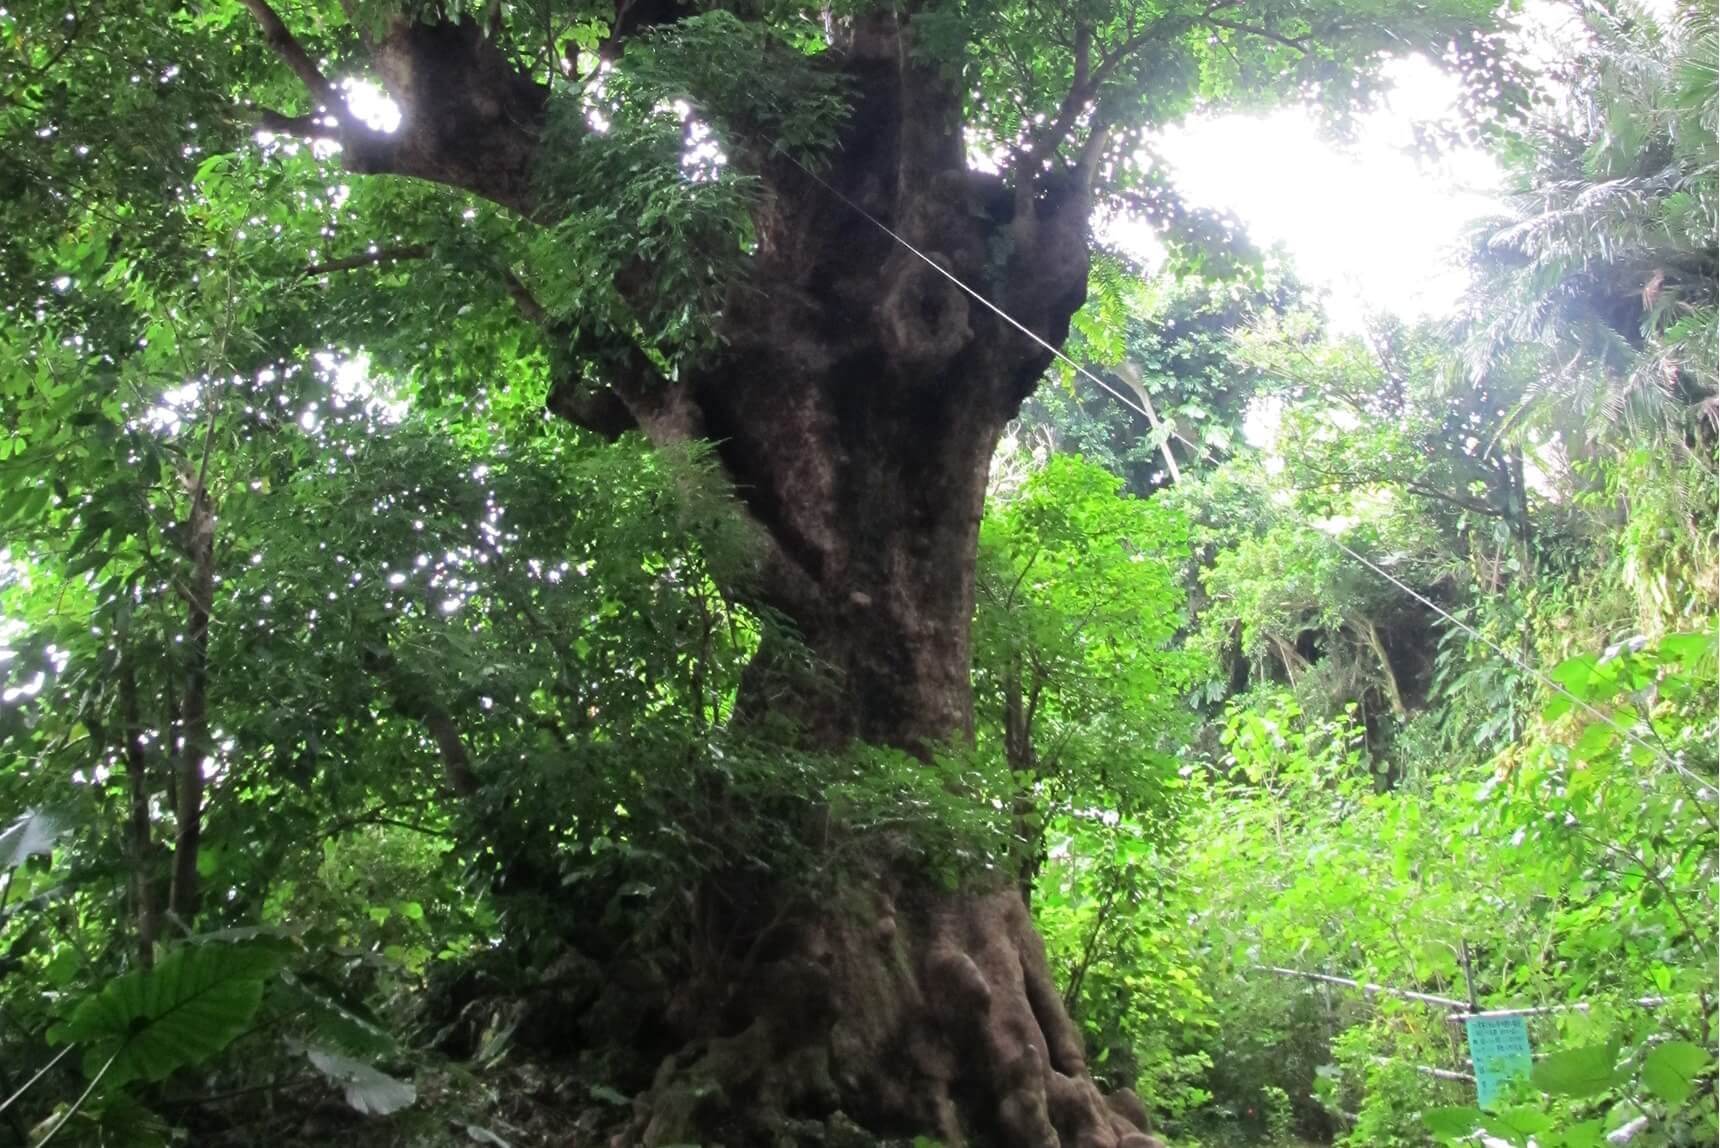 O-akagi Tree